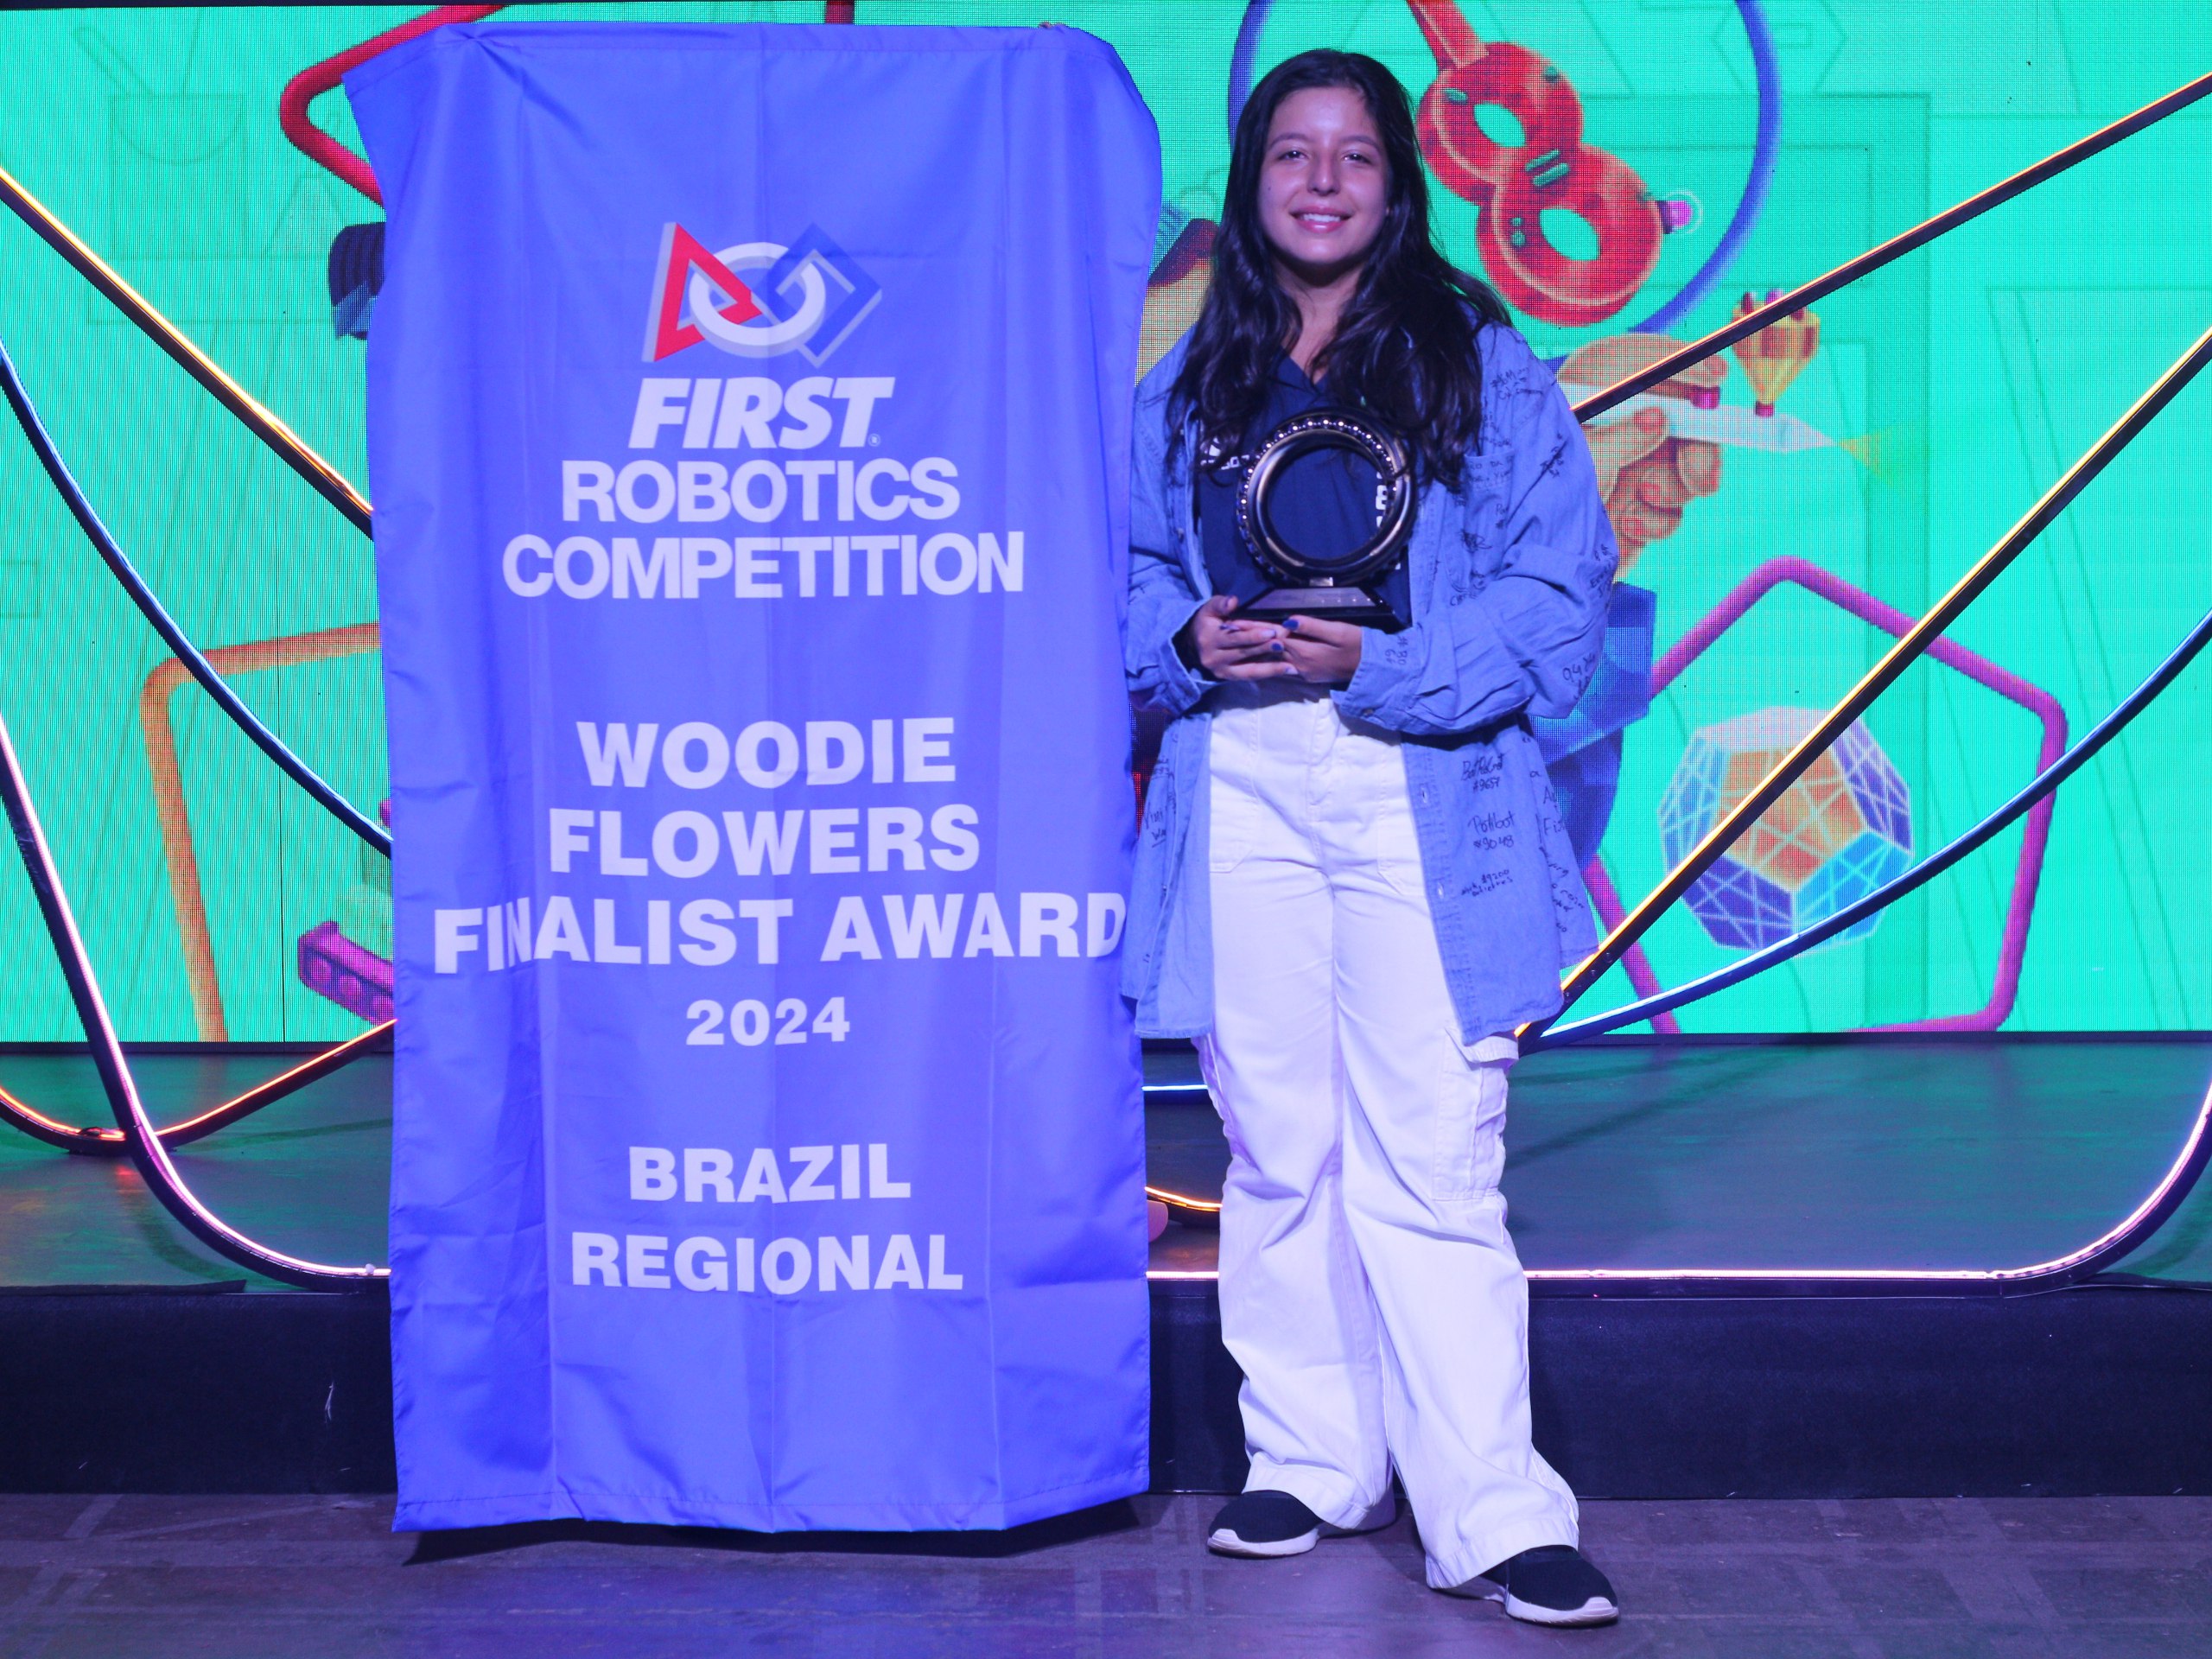 Carolina Martins Pedro, do Câmpus Florianópolis, conquistou o prêmio Woodie Flowers Finalist Award